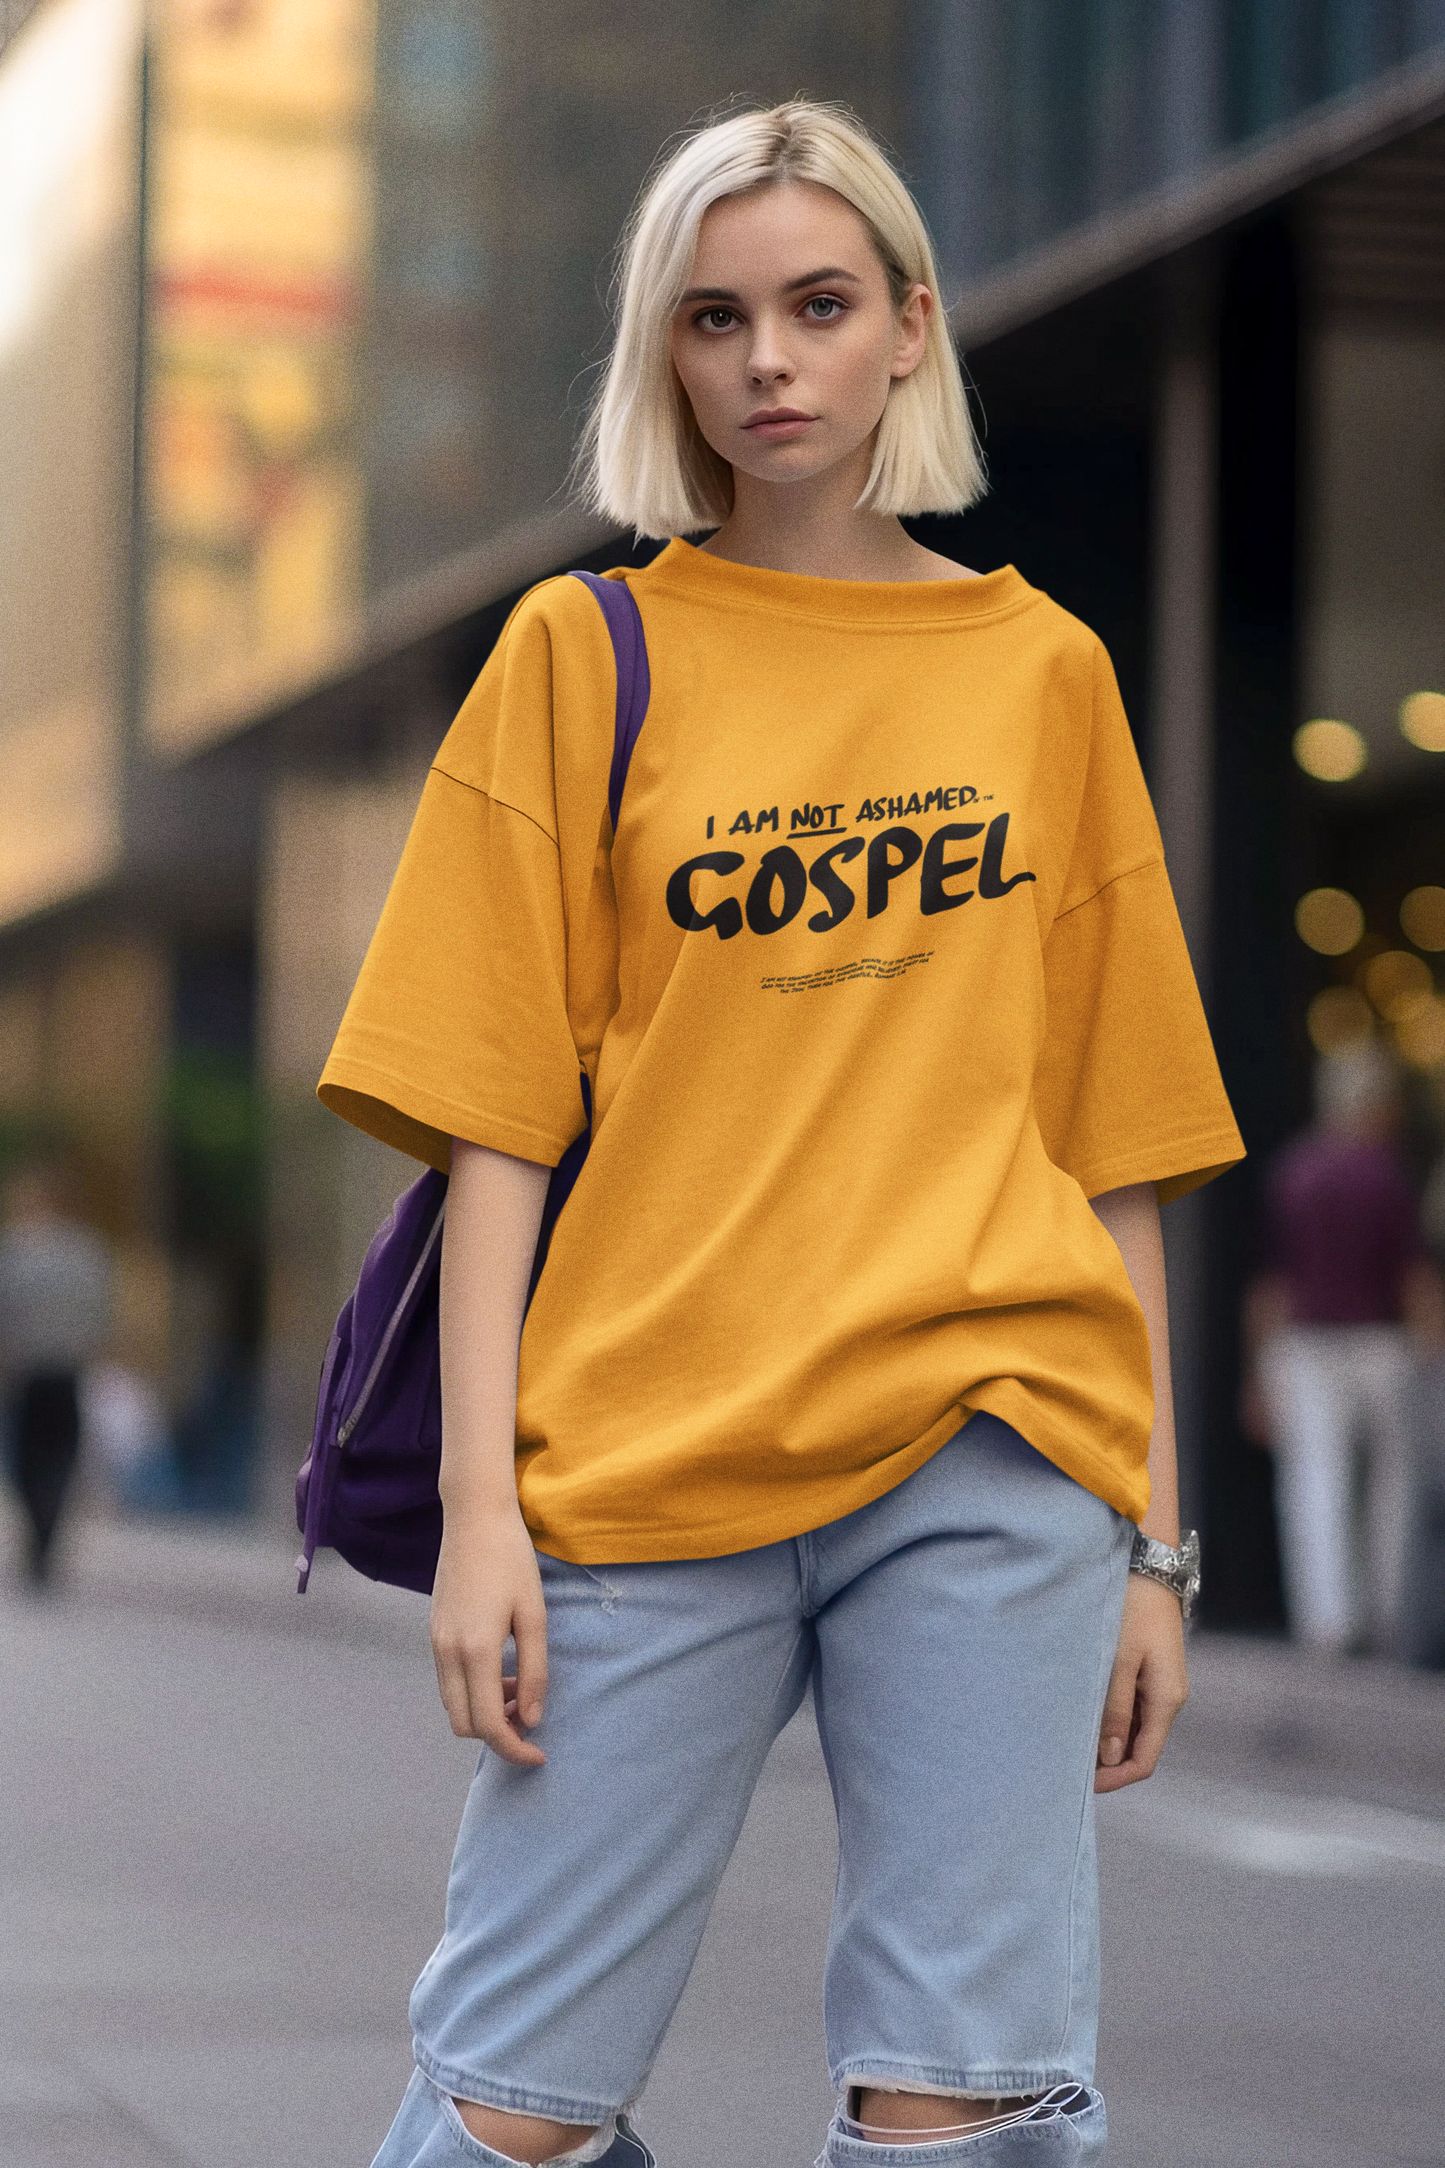 I am not ashamed of the Gospel. Tee.